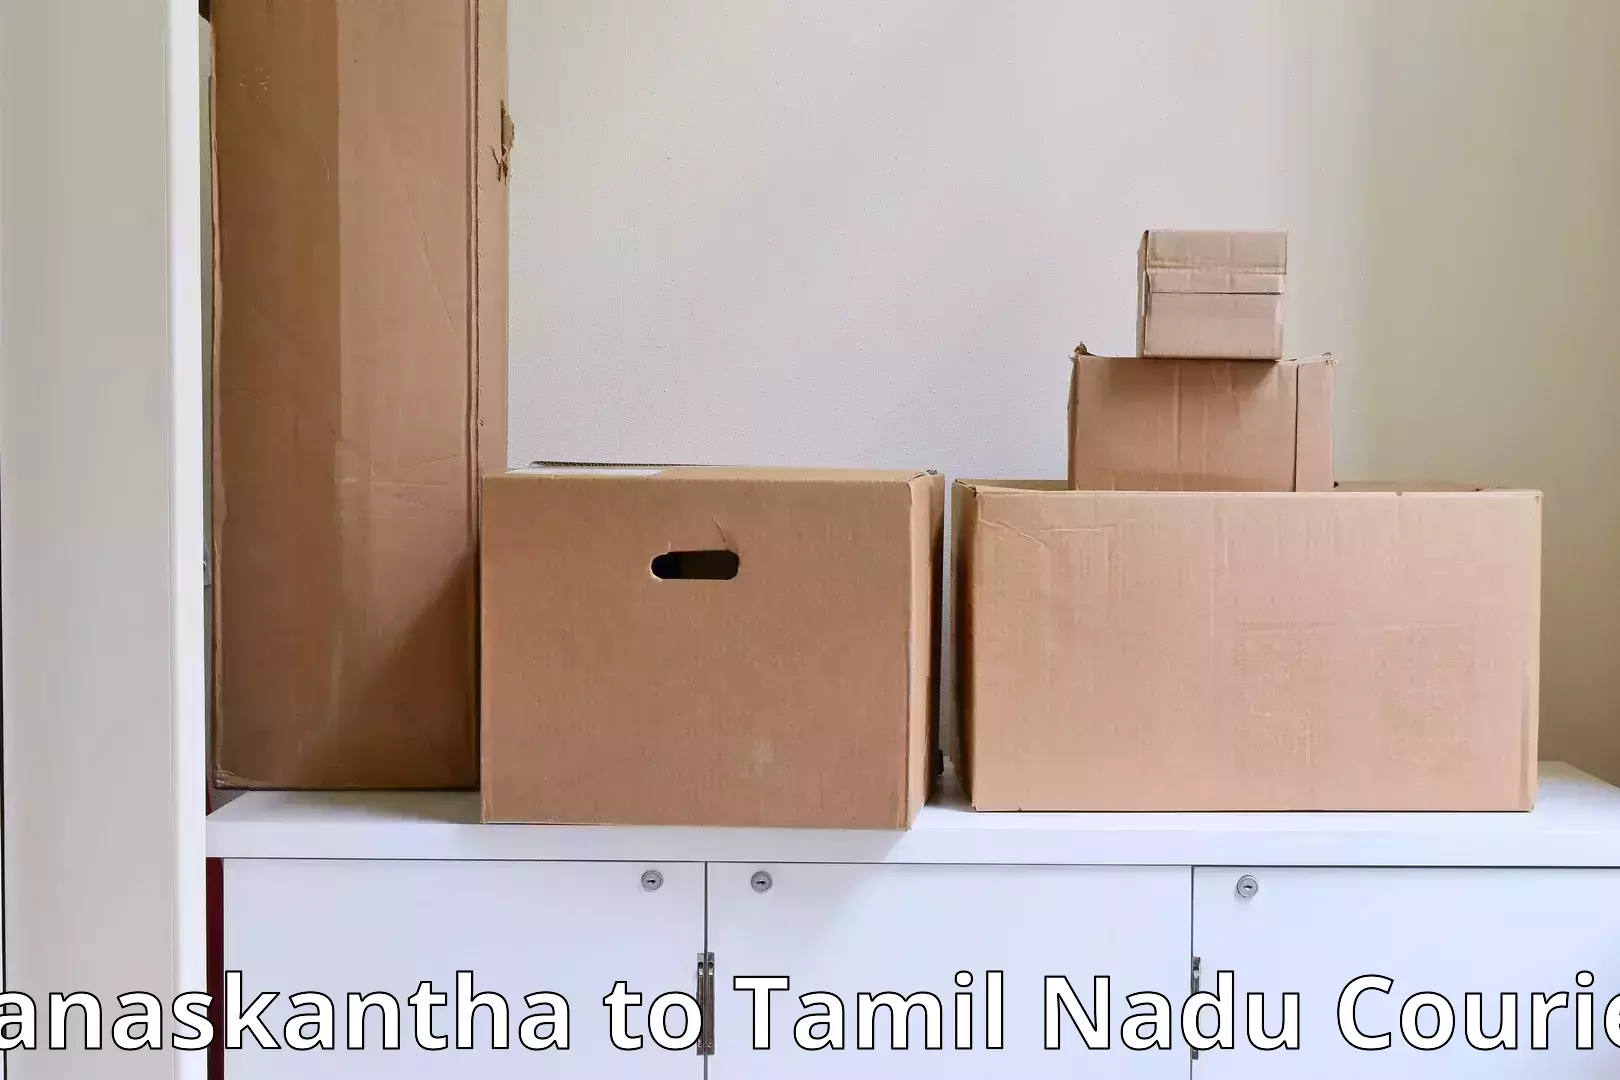 Professional movers and packers Banaskantha to Papanasam